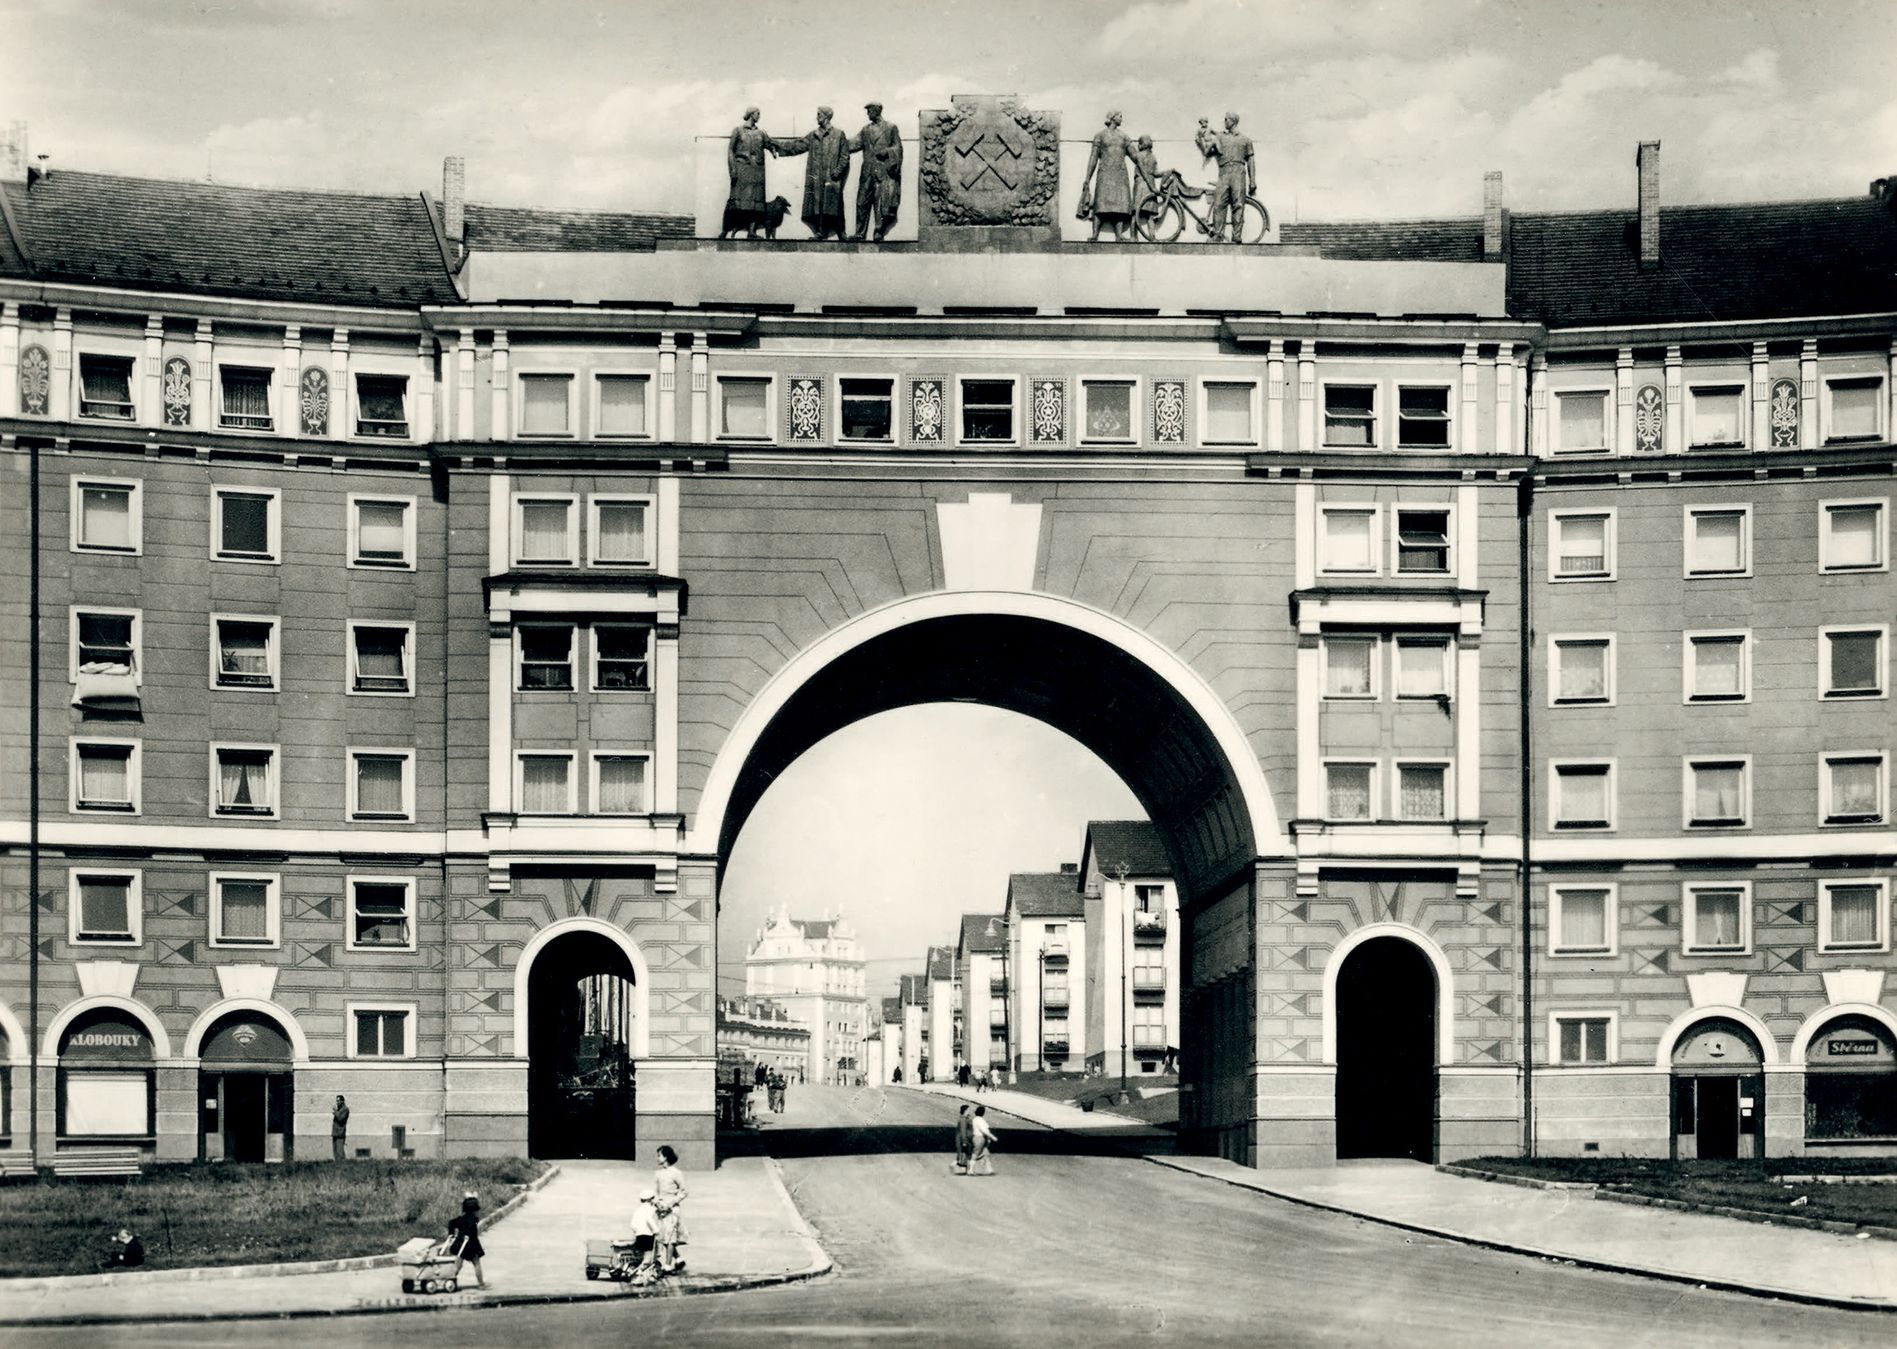 Kniha, Ostrava, Zrození metropole. Ostrava ve fotografiích padesátých a šedesátých let 20. století